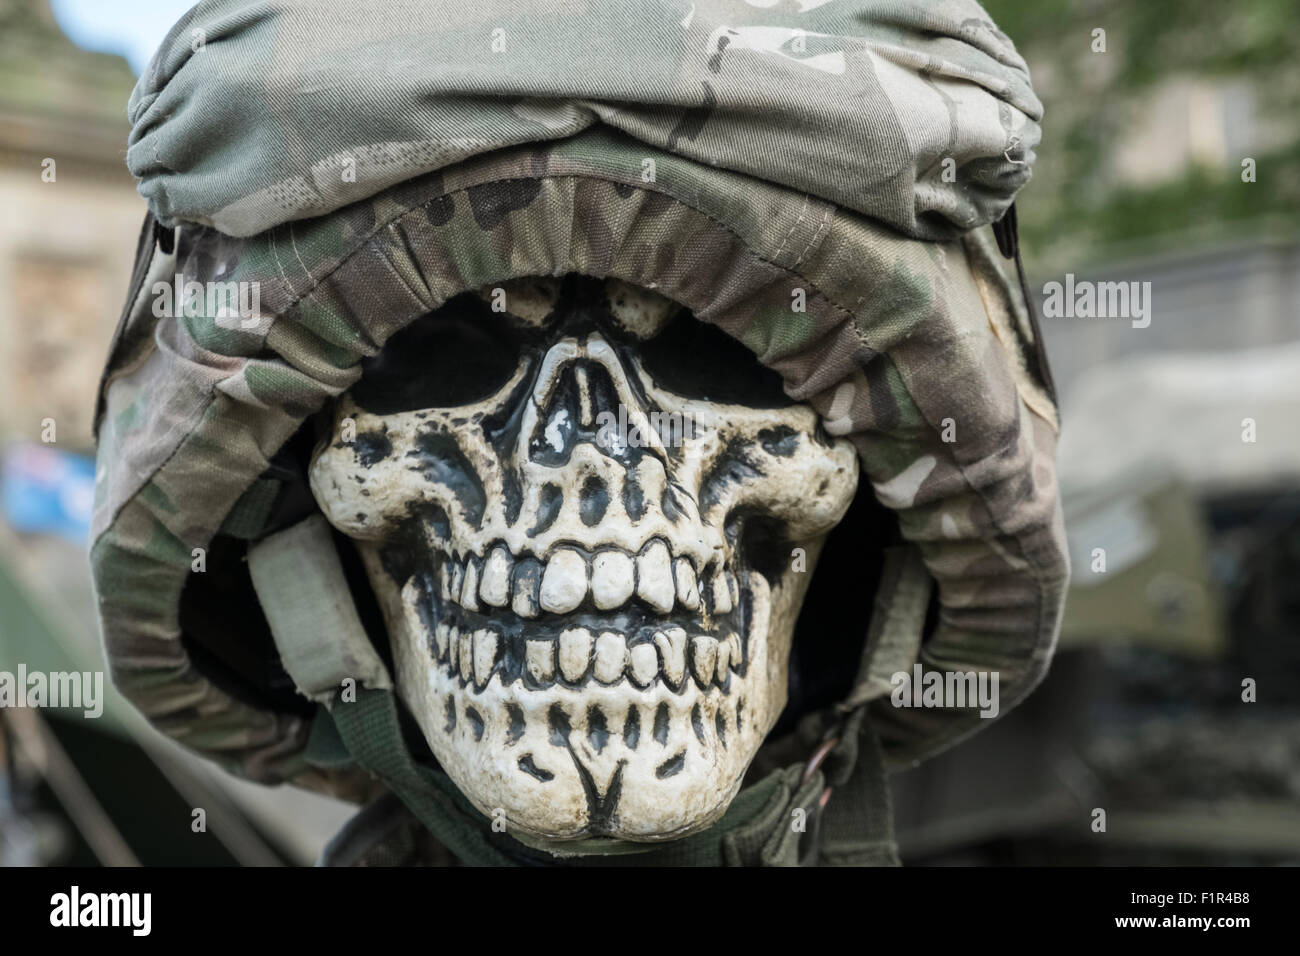 Réplica del cráneo humano y gorra militar en exhibición en el evento de un país justo, Inglaterra Foto de stock